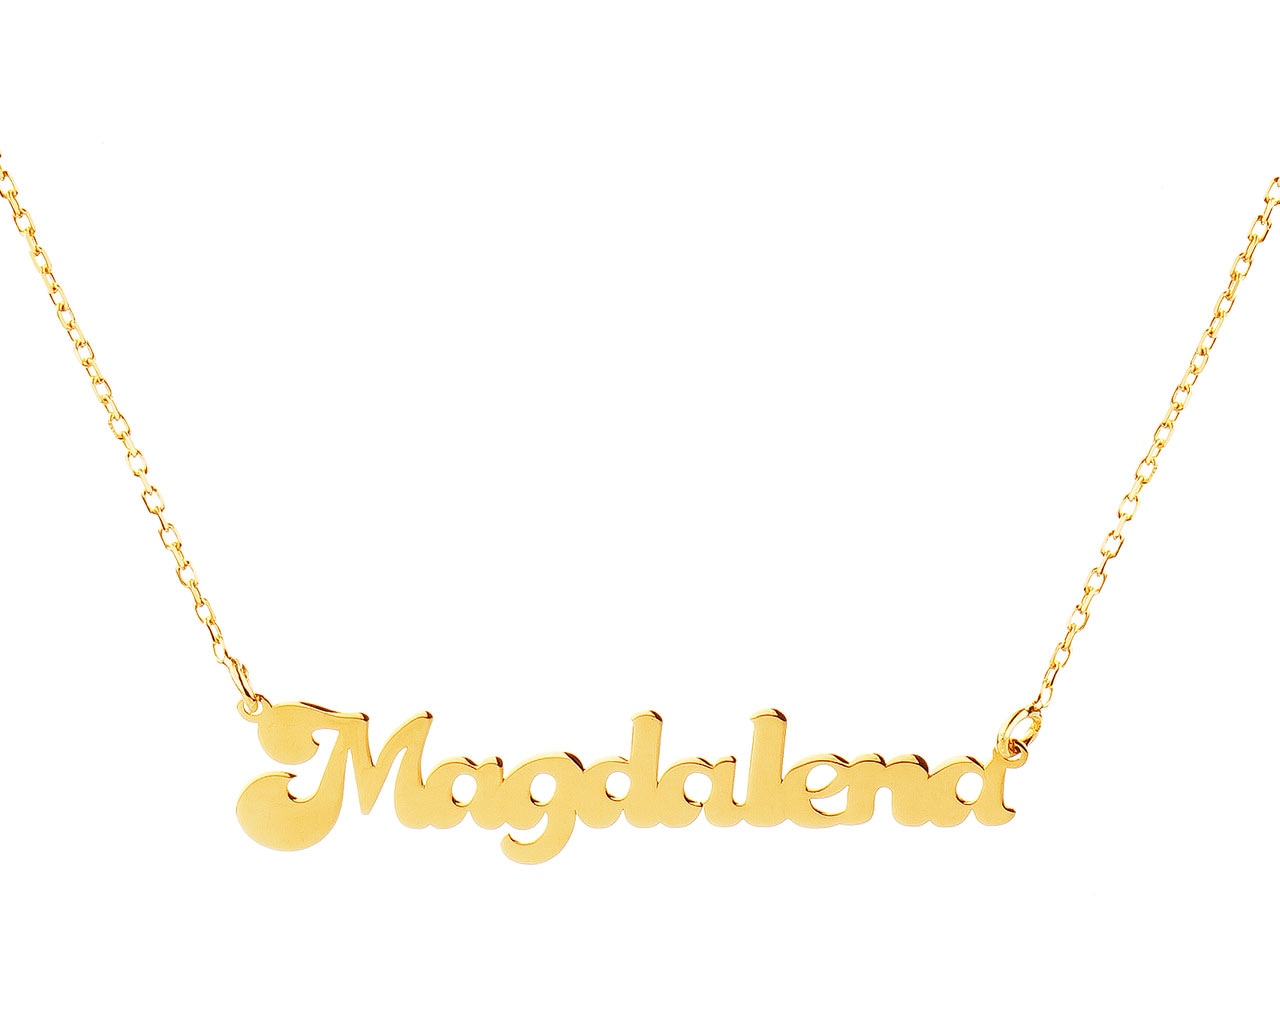 Zlatý náhrdelník - Magdalena